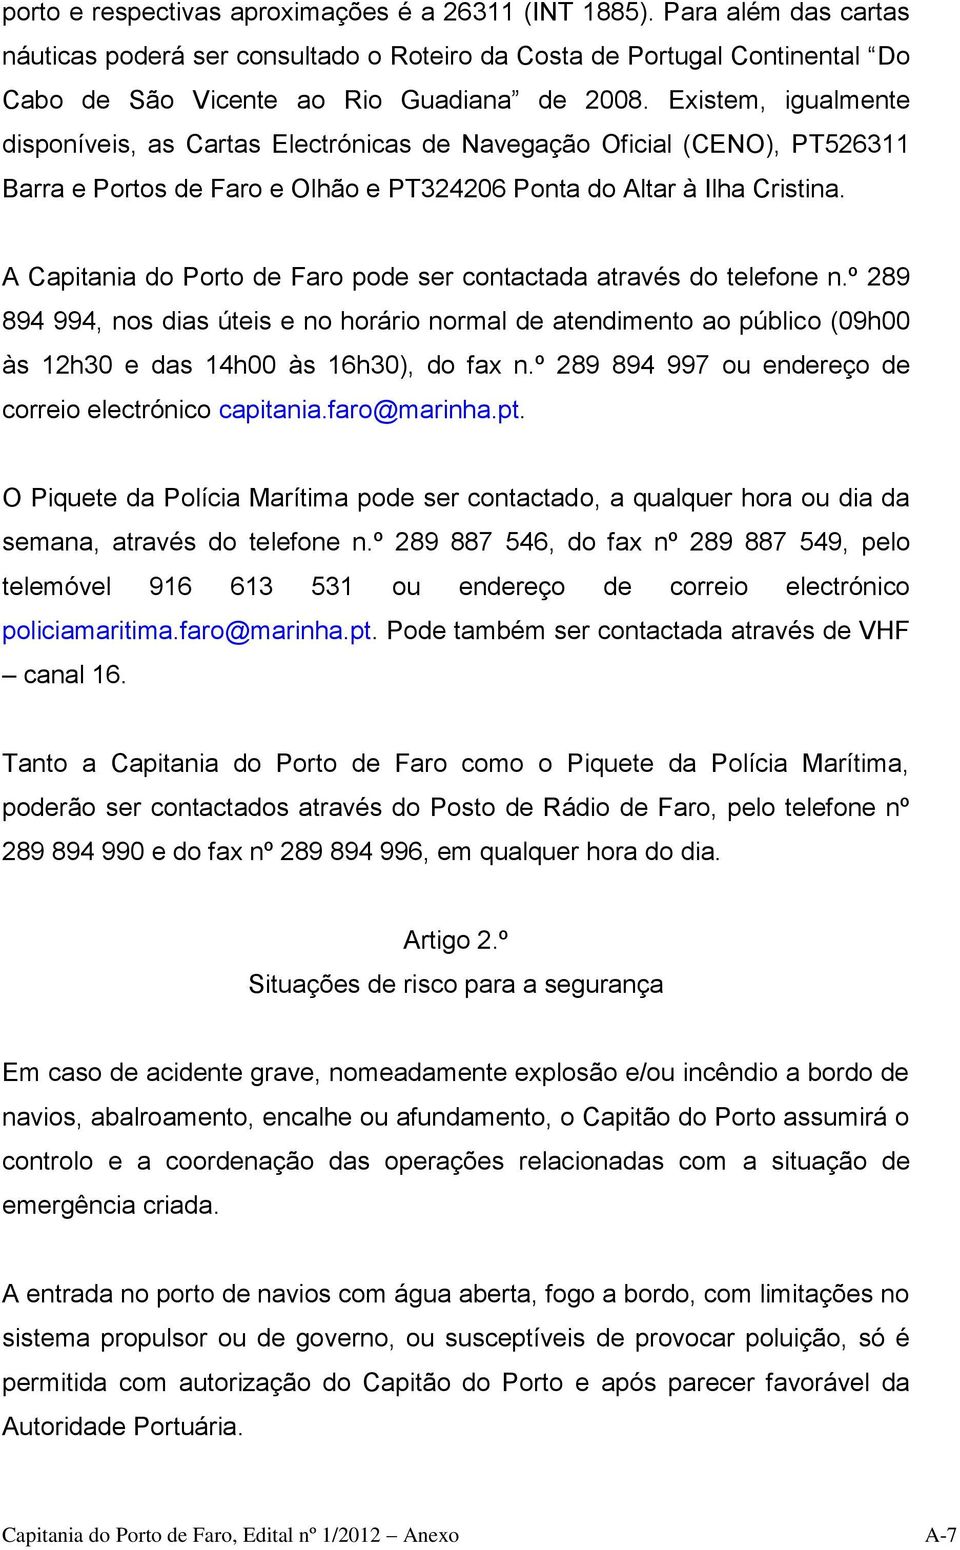 A Capitania do Porto de Faro pode ser contactada através do telefone n.º 289 894 994, nos dias úteis e no horário normal de atendimento ao público (09h00 às 12h30 e das 14h00 às 16h30), do fax n.